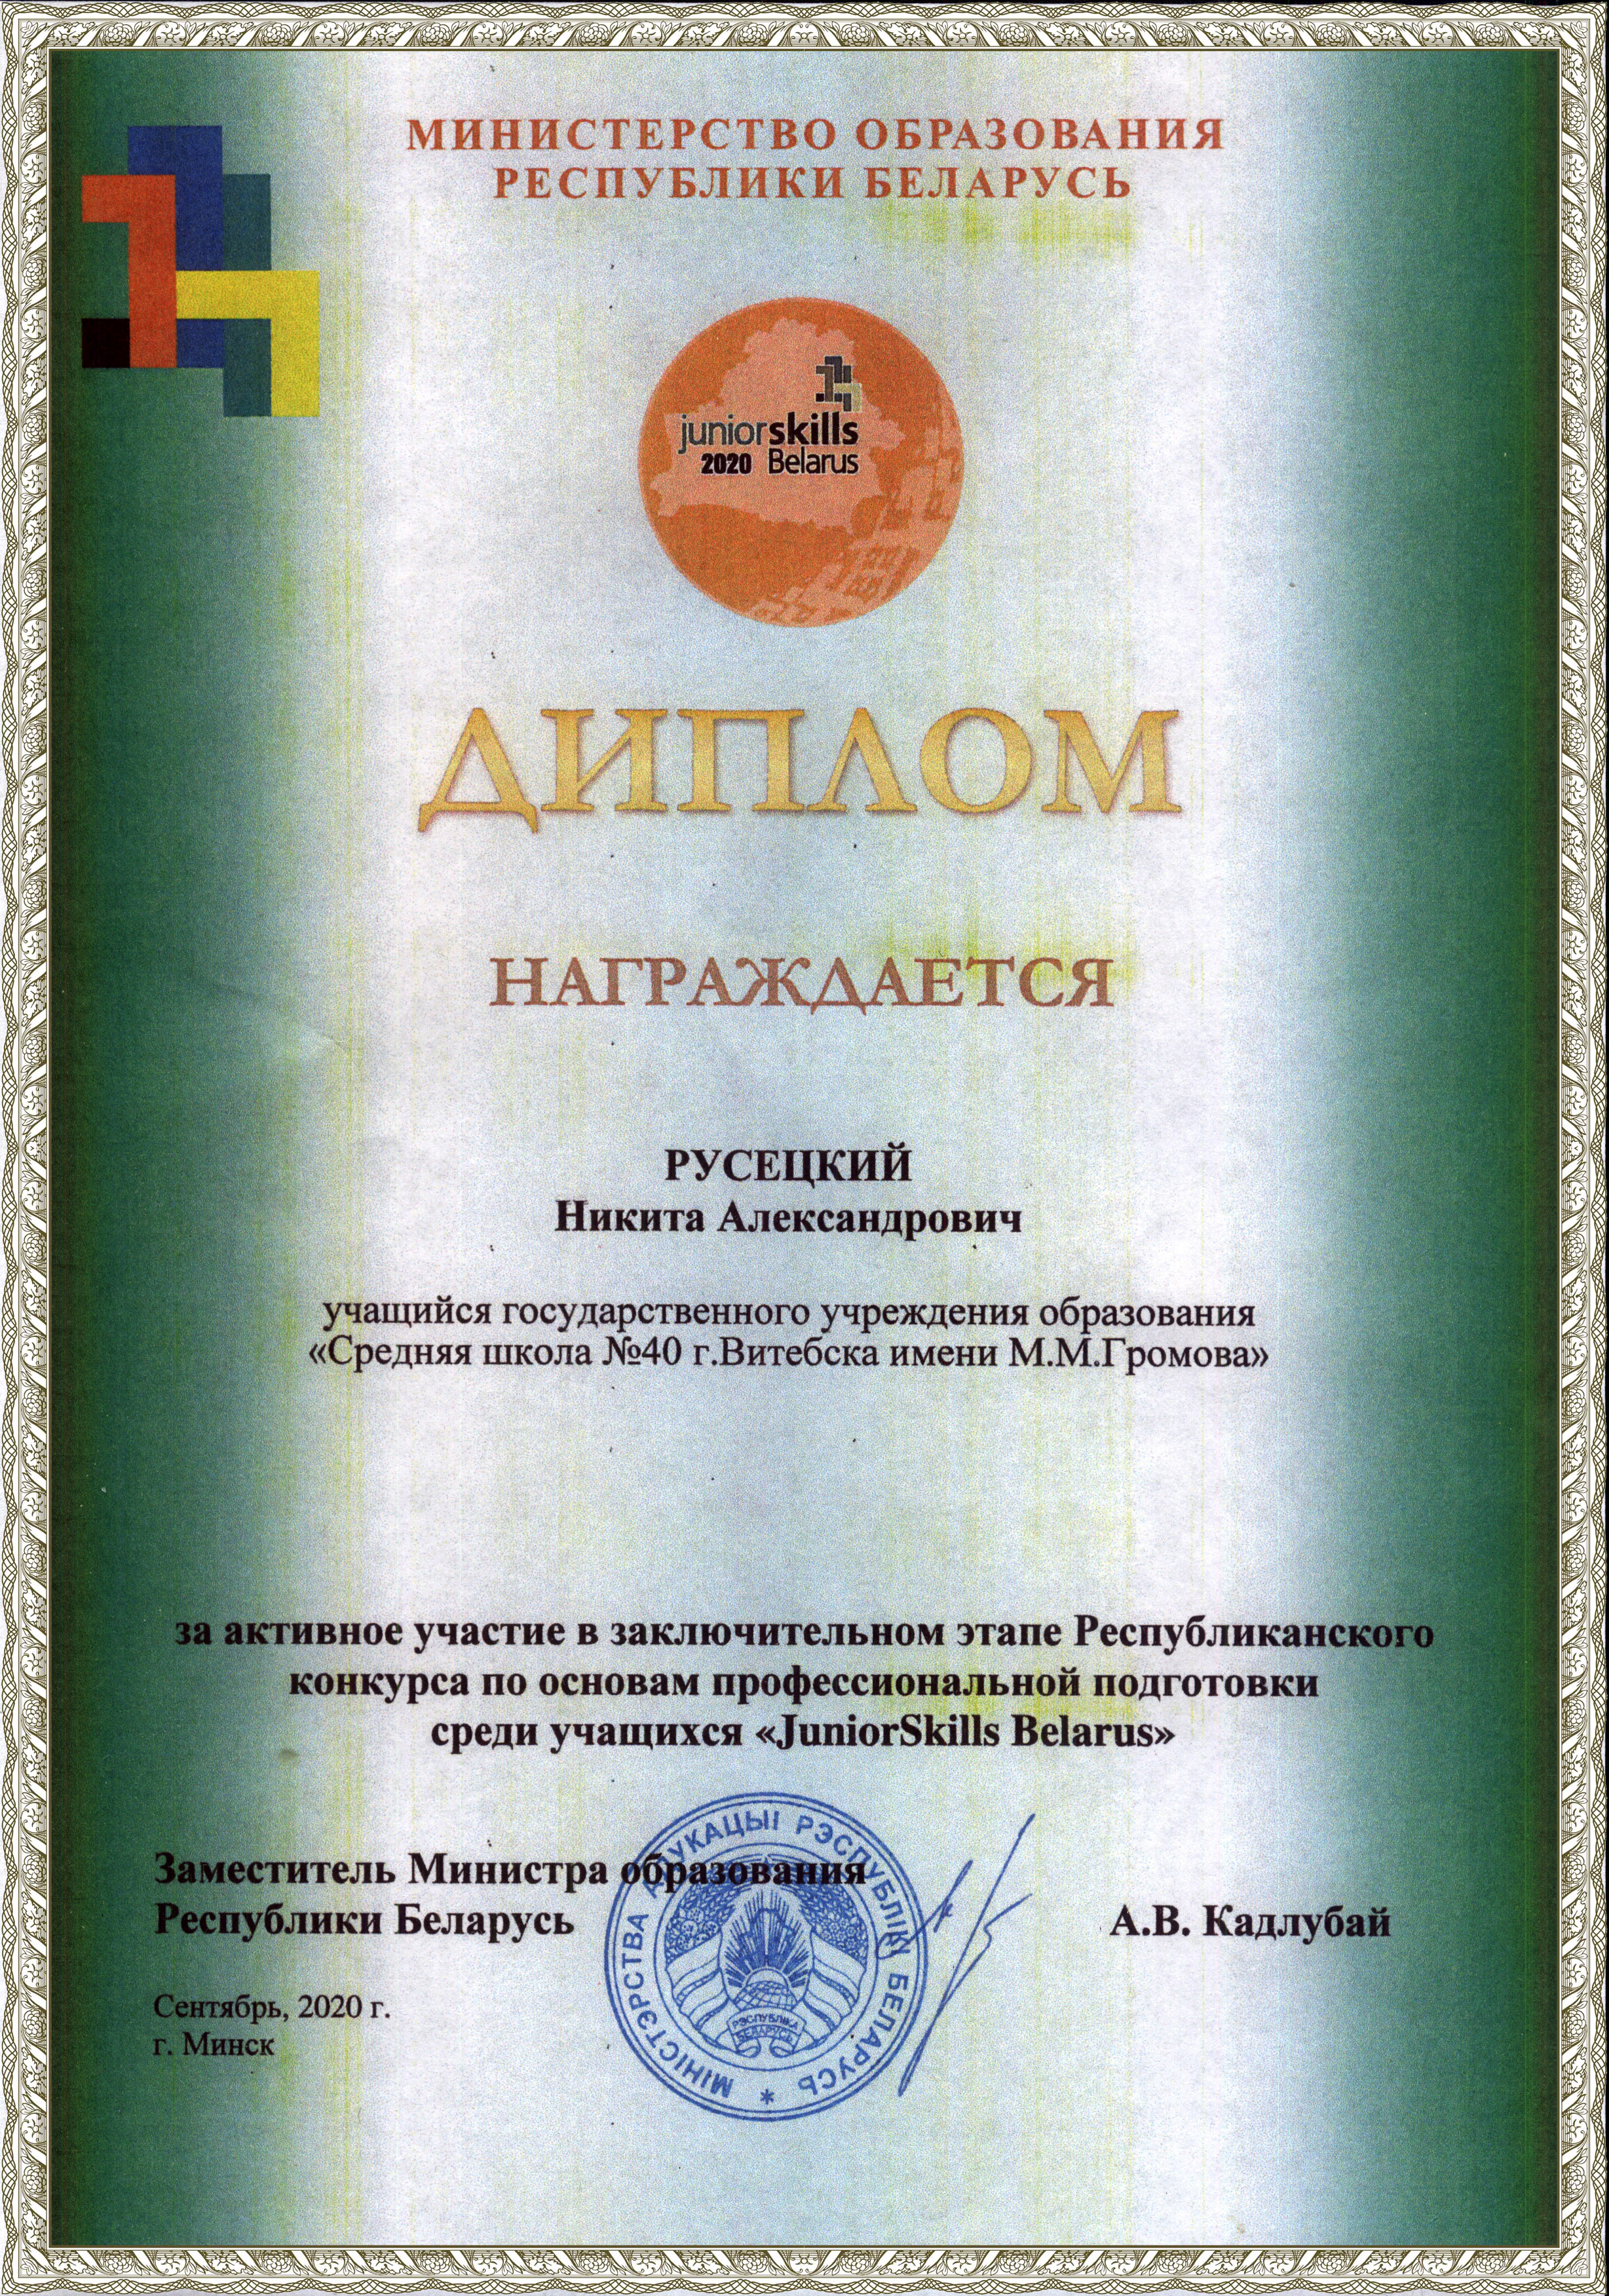 Diplom Rusetsky JS 2020